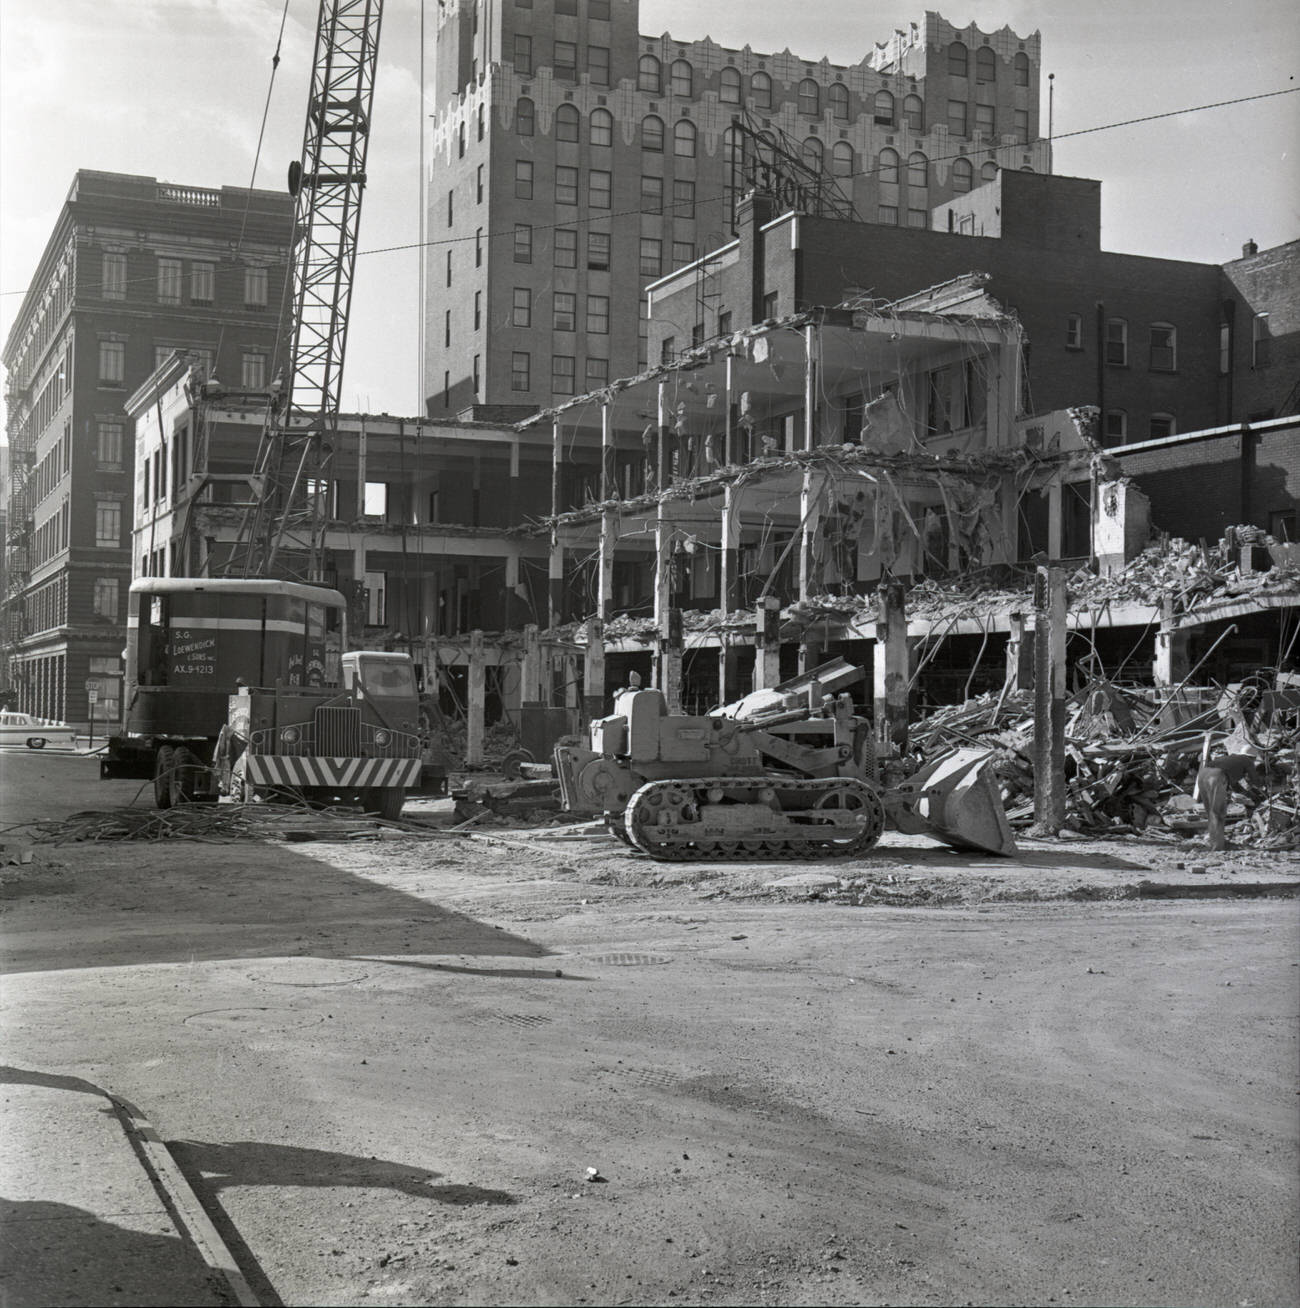 Columbus Citizen Building demolition, 1960.